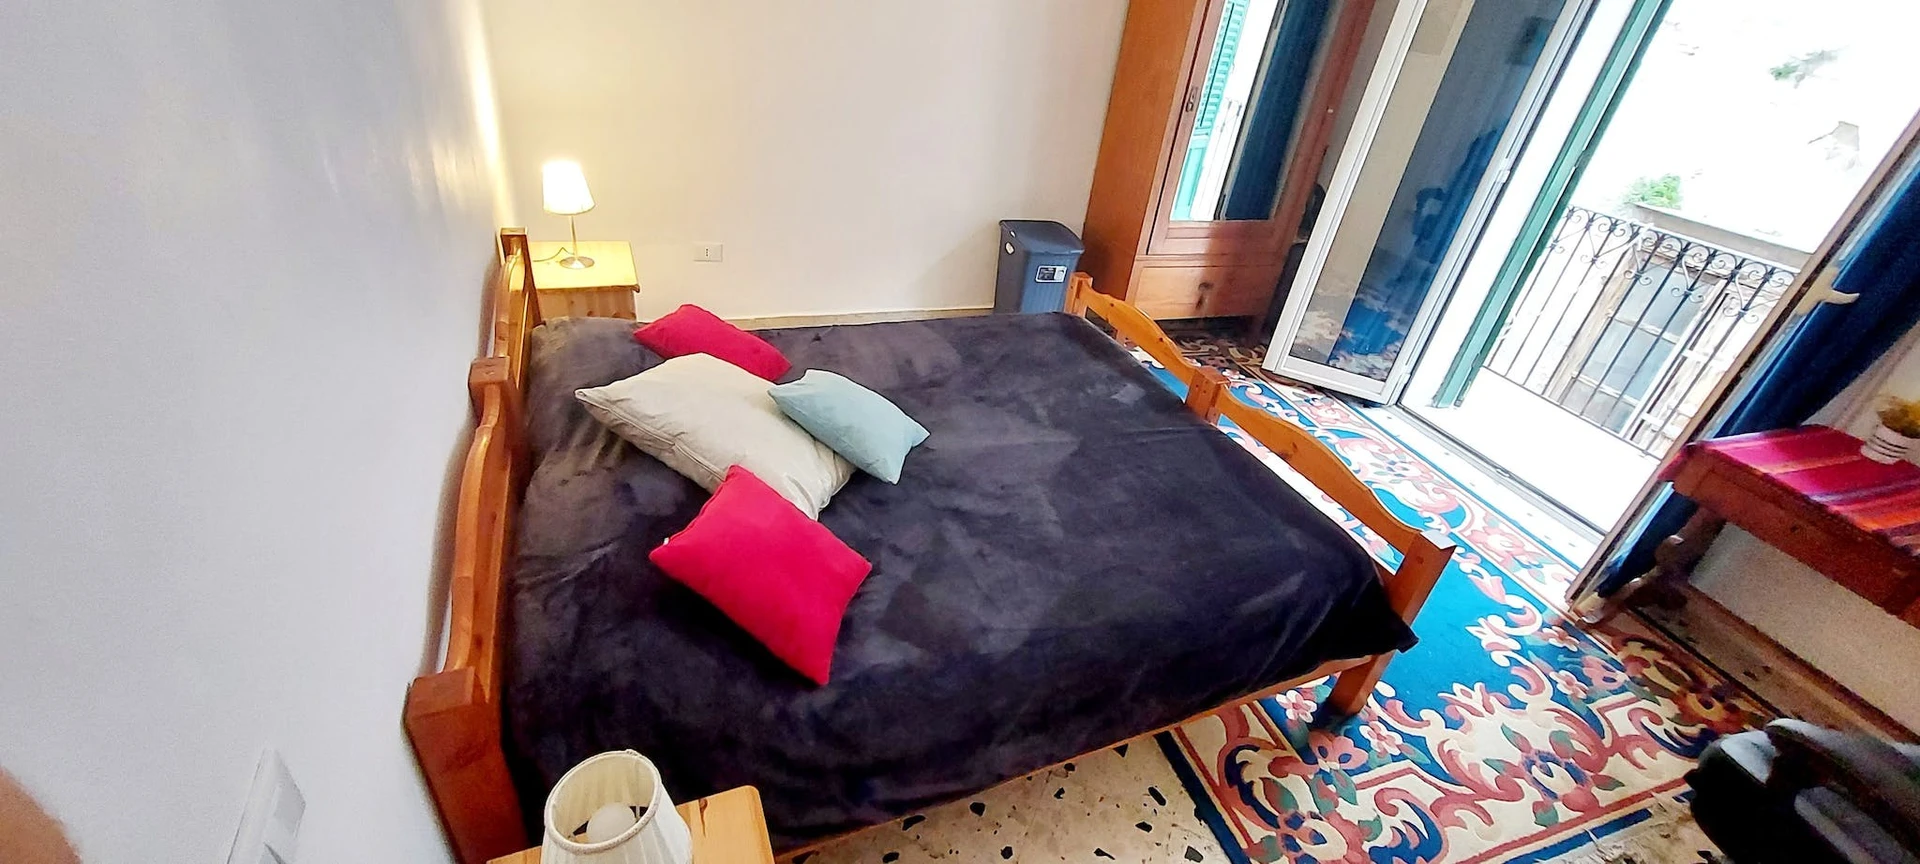 Habitación en alquiler con cama doble Palermo